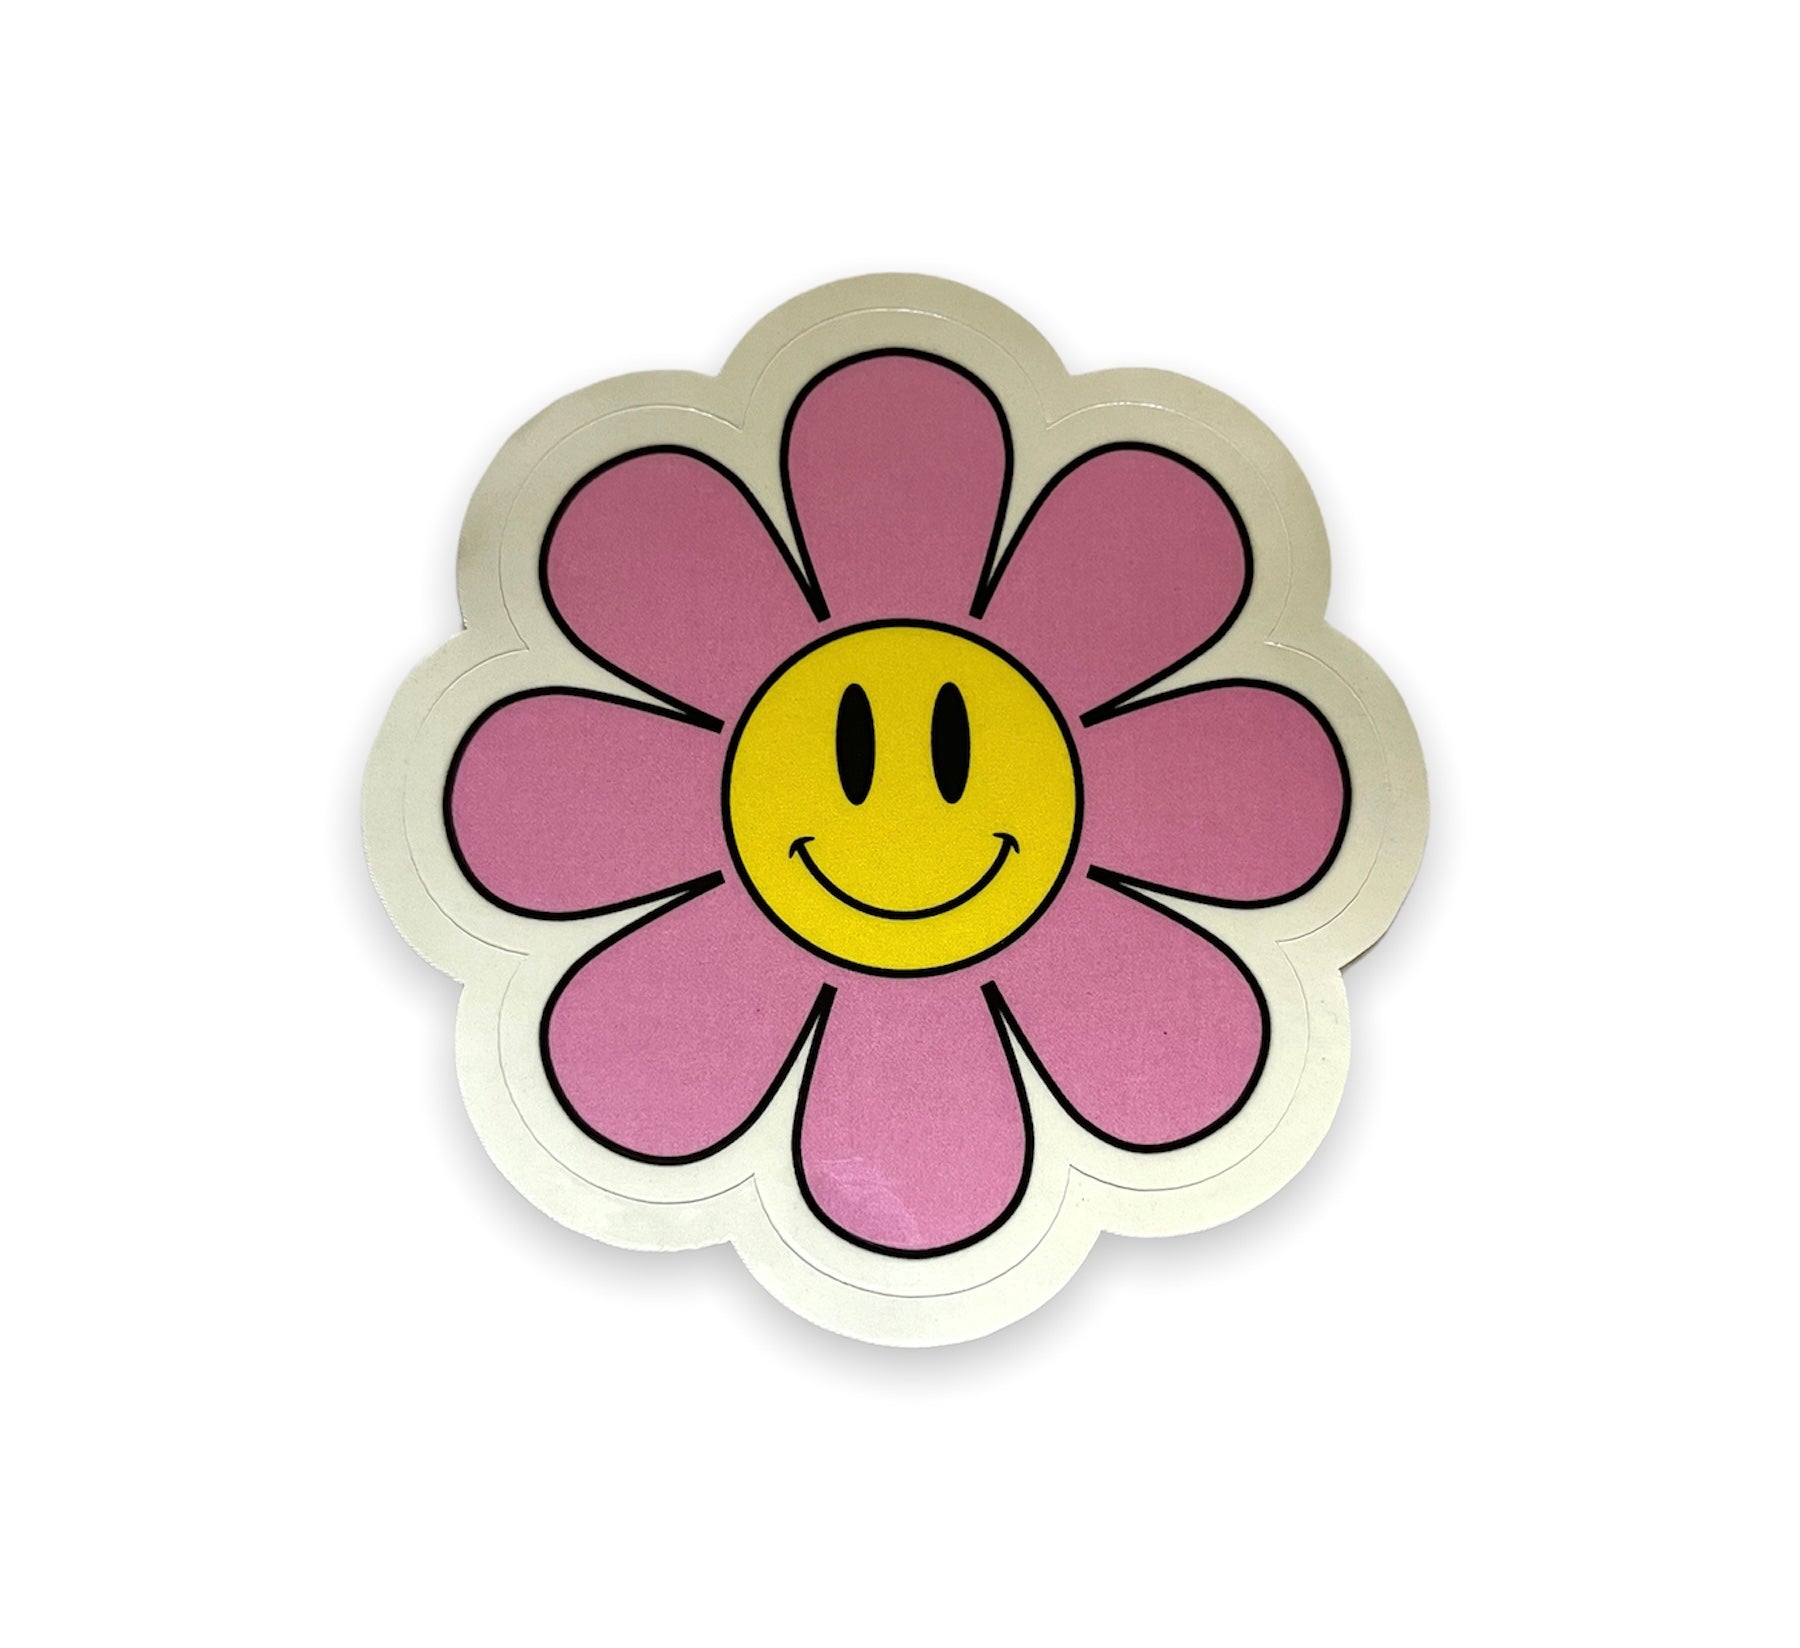 Pastel Flower Power Vinyl Sticker, Smiley Flower Sticker, Smiley Face Sticker